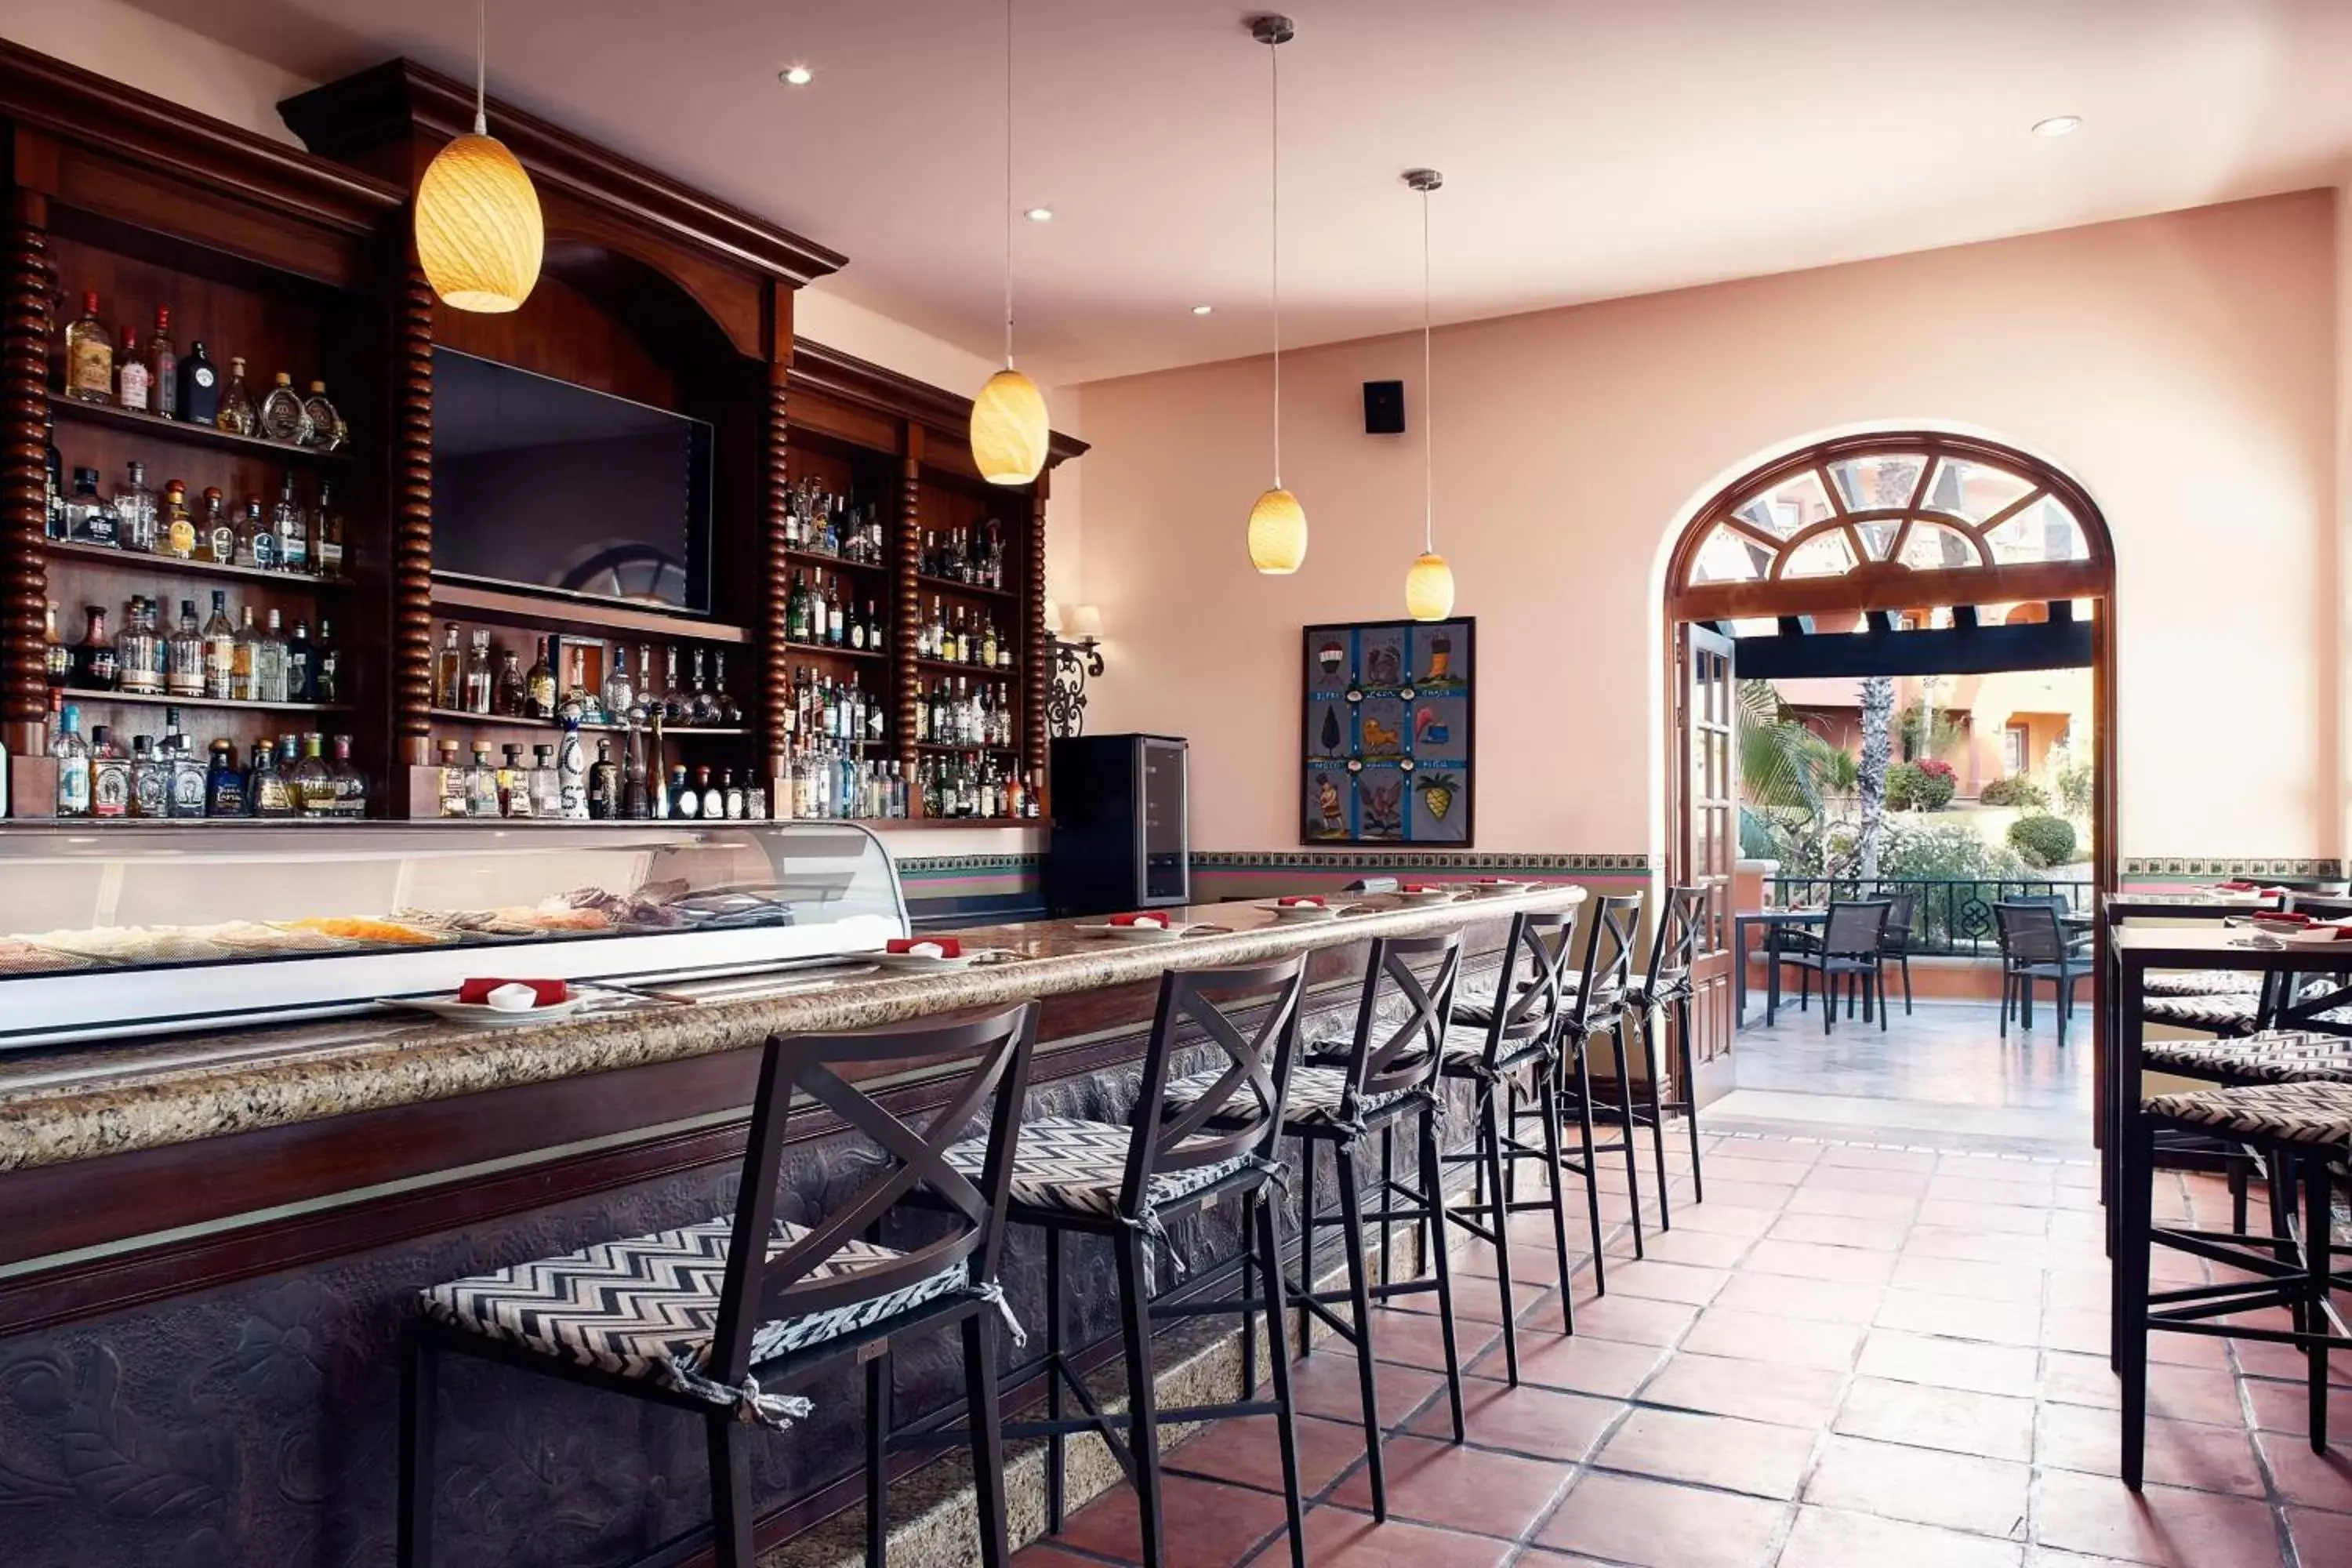 Restaurant/places to eat, Lounge/Bar in Hacienda del Mar Los Cabos